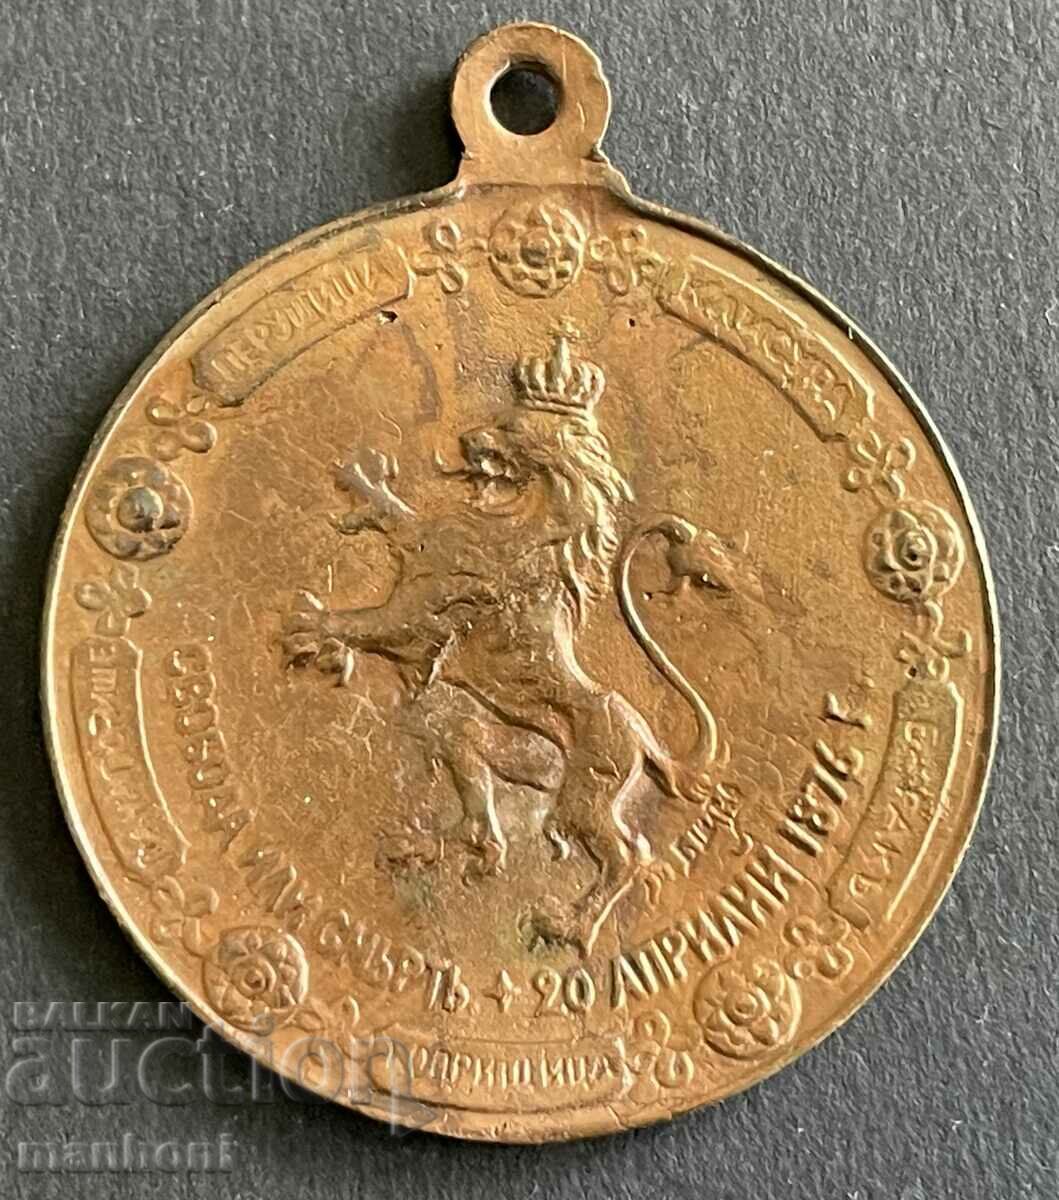 5648 Principatul Bulgariei medalie 25 ani Revolta din aprilie 1901